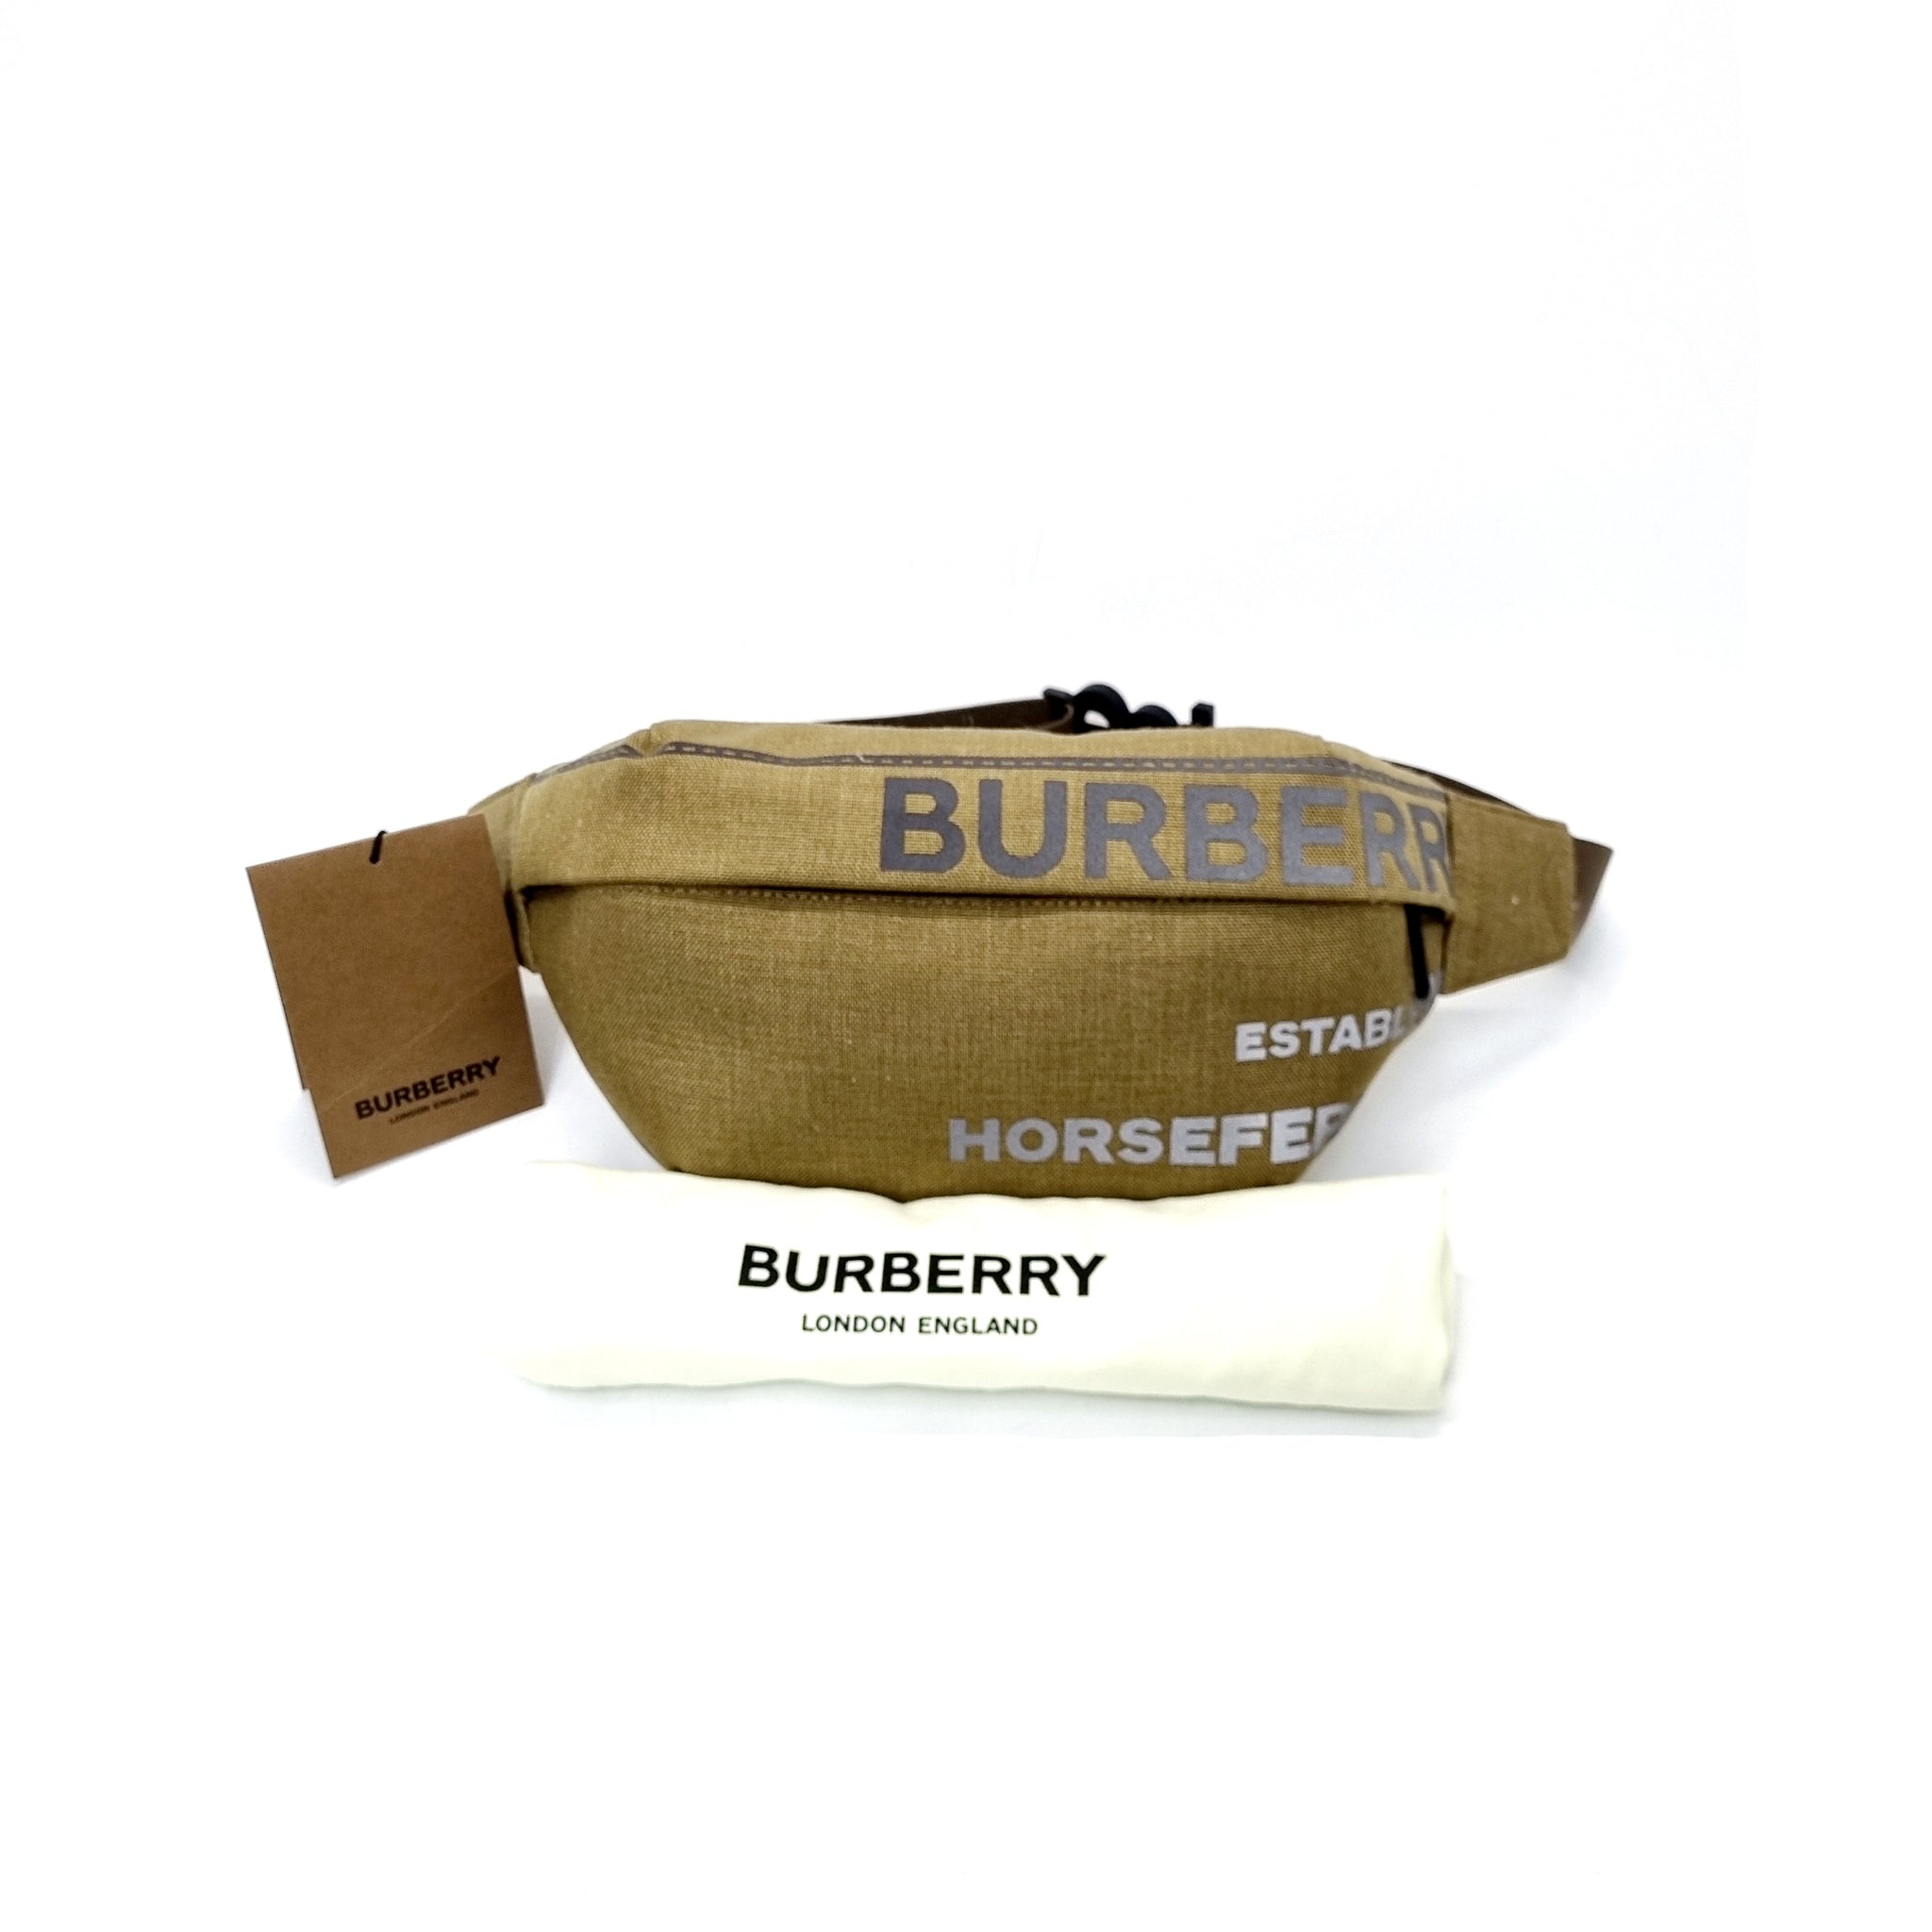 Burberry Bum Belt Bag TB Monogram Beige/Orange in Calfskin with